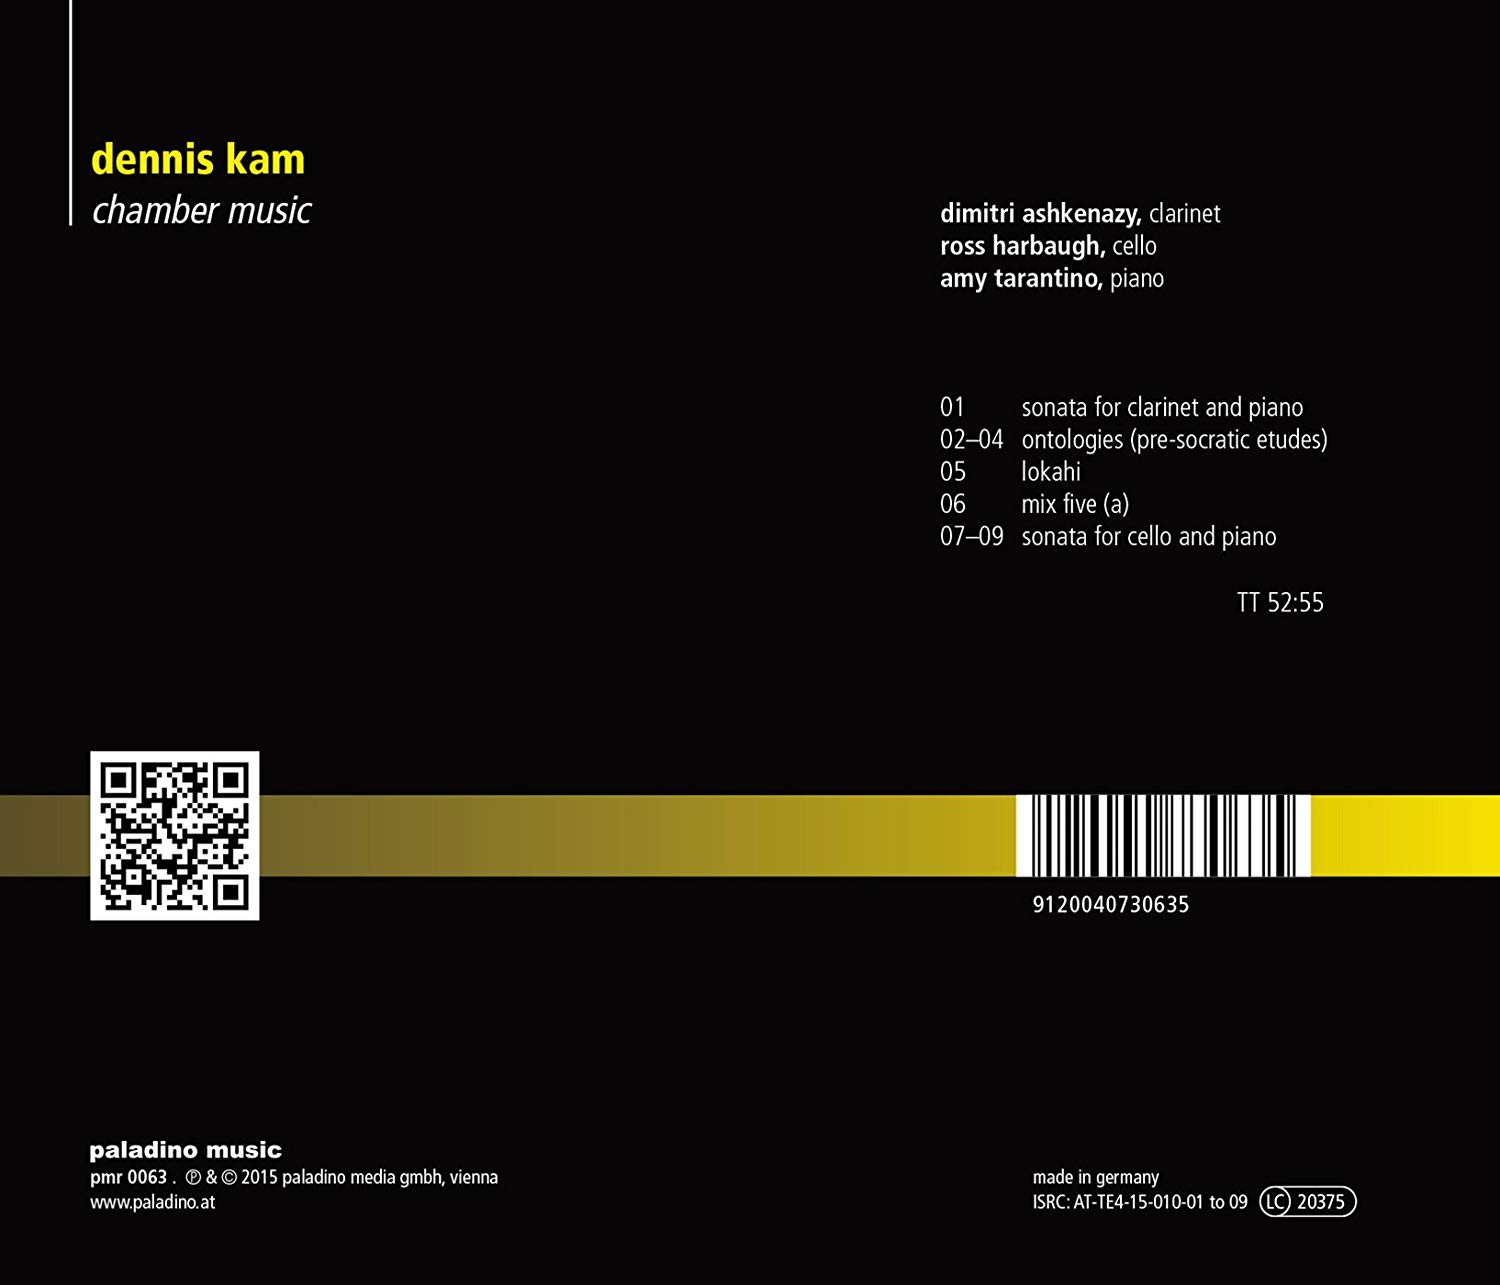 Dennis Kam, Chamber Music, CD cover back